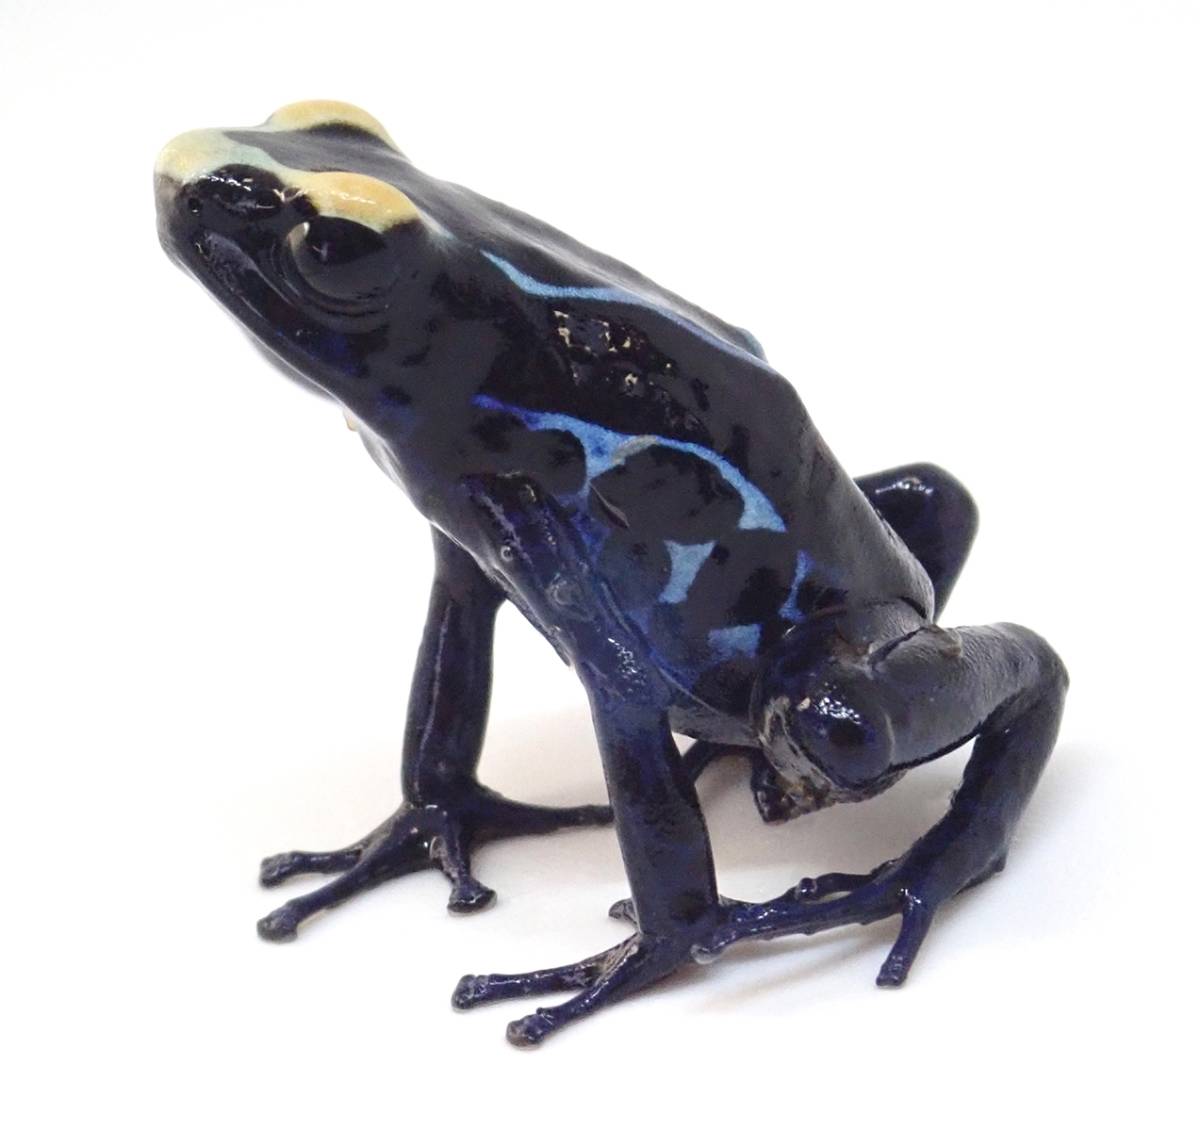 Pint-sized Poisoner – Green & Black Poison Dart Frog – incidental naturalist